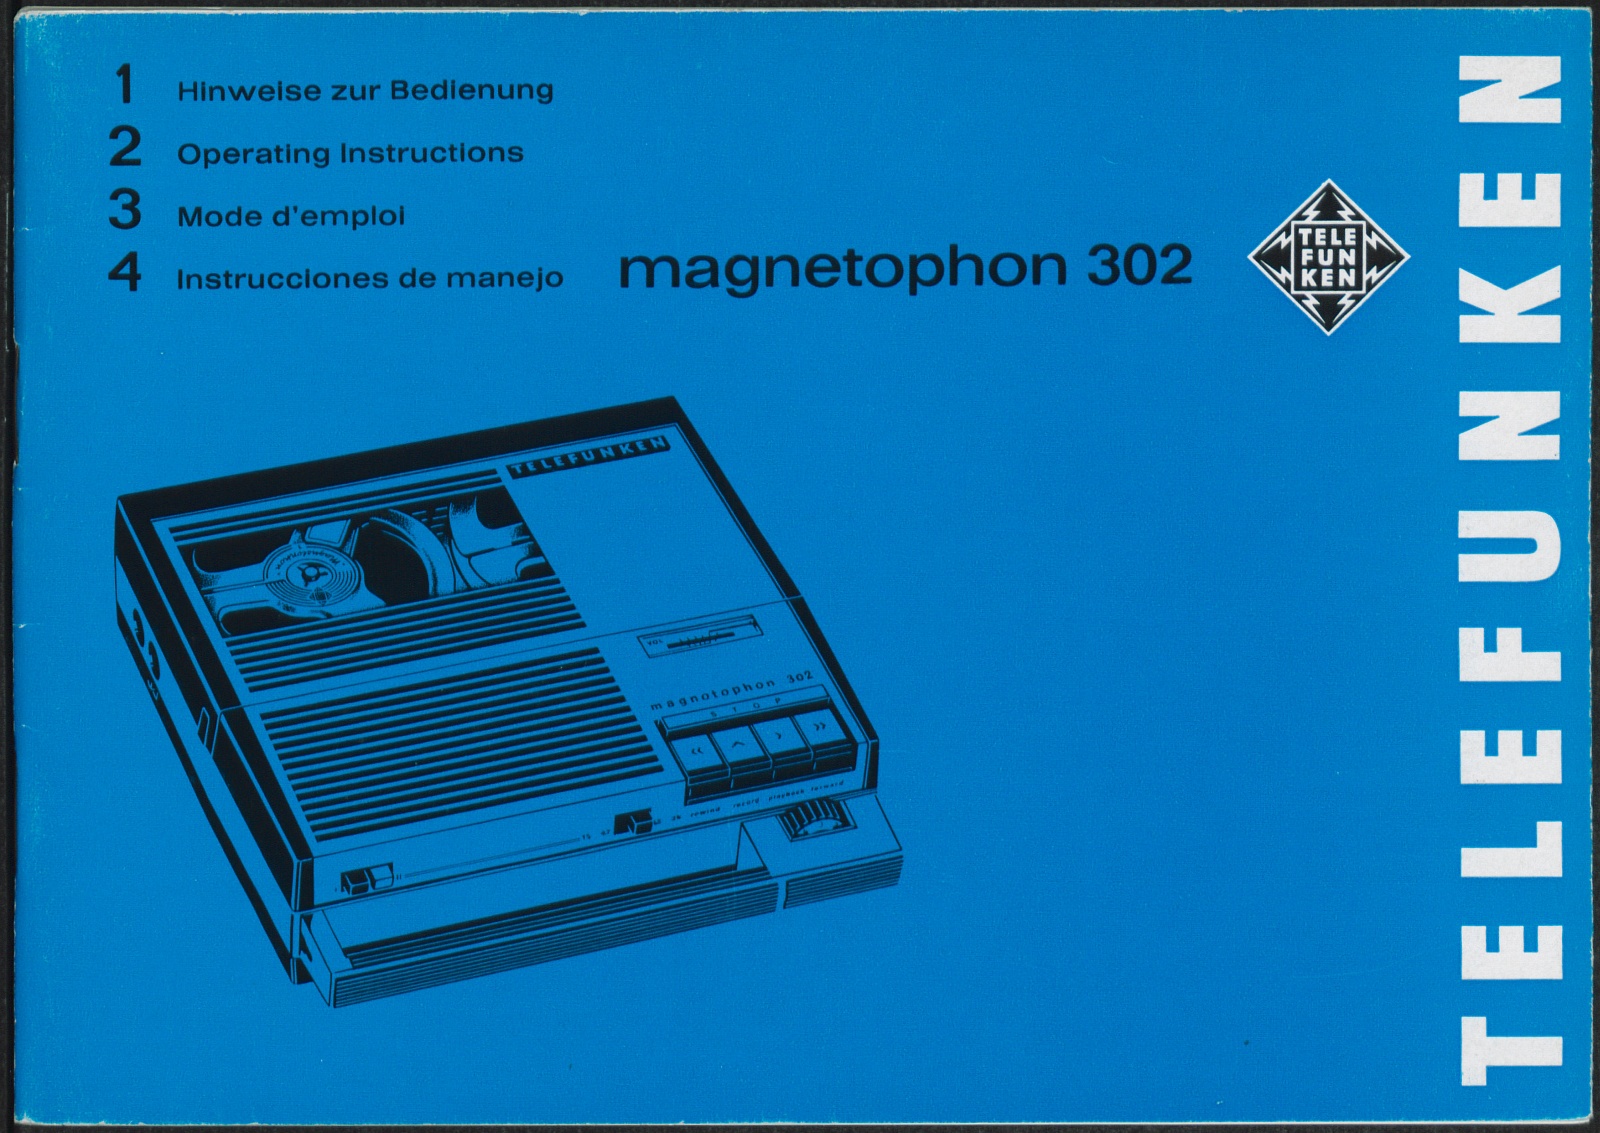 Bedienungsanleitung: Hinweise zur Bedienung Telefunken magnetophon 302 (Stiftung Deutsches Technikmuseum Berlin CC0)